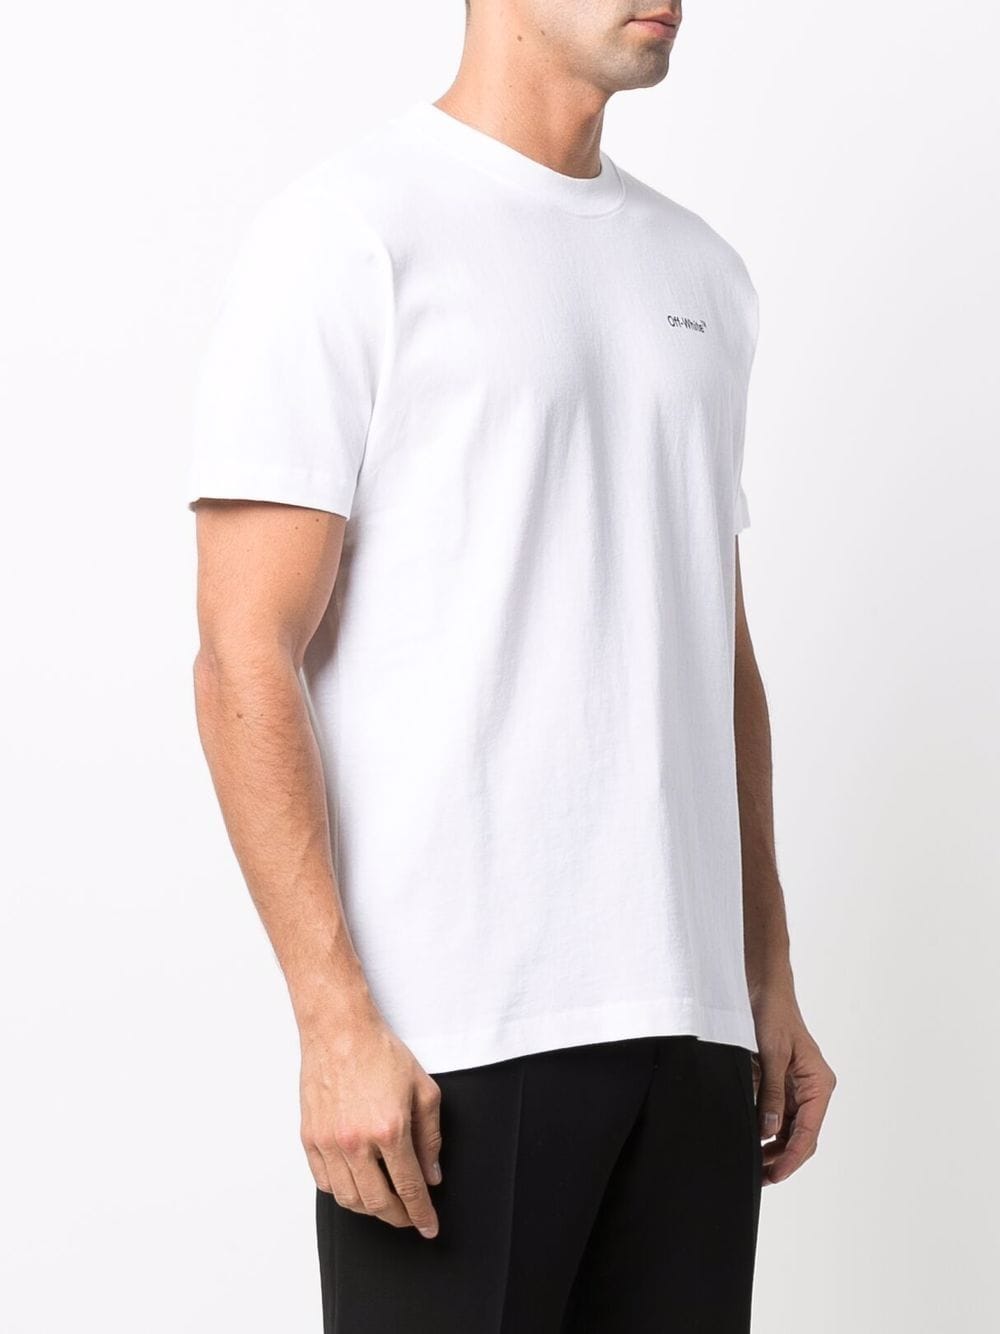 Off-White T-shirt Caravaggio Arrow - Lothaire boutiques